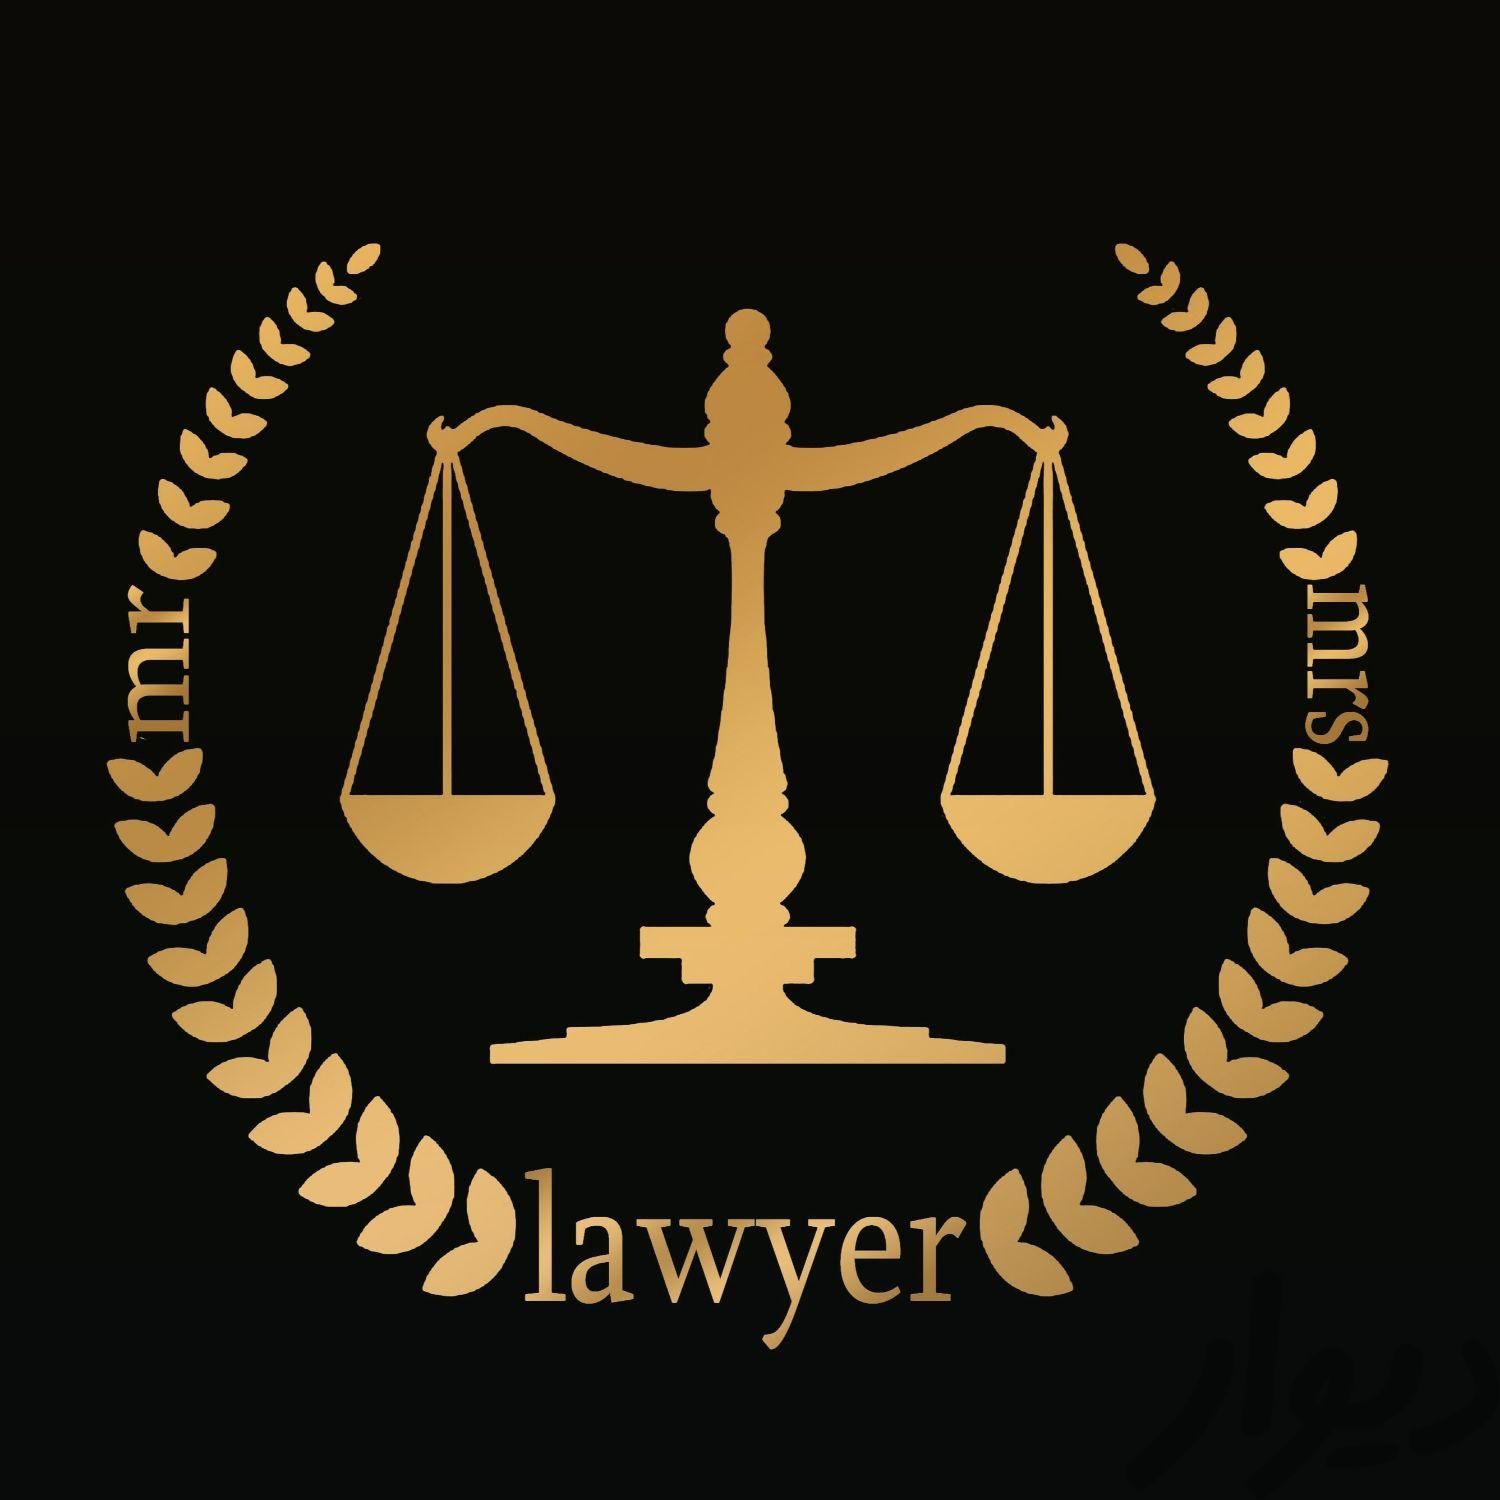 قرارداد پیش فروش و مشارکت در ساخت با حضور وکیل